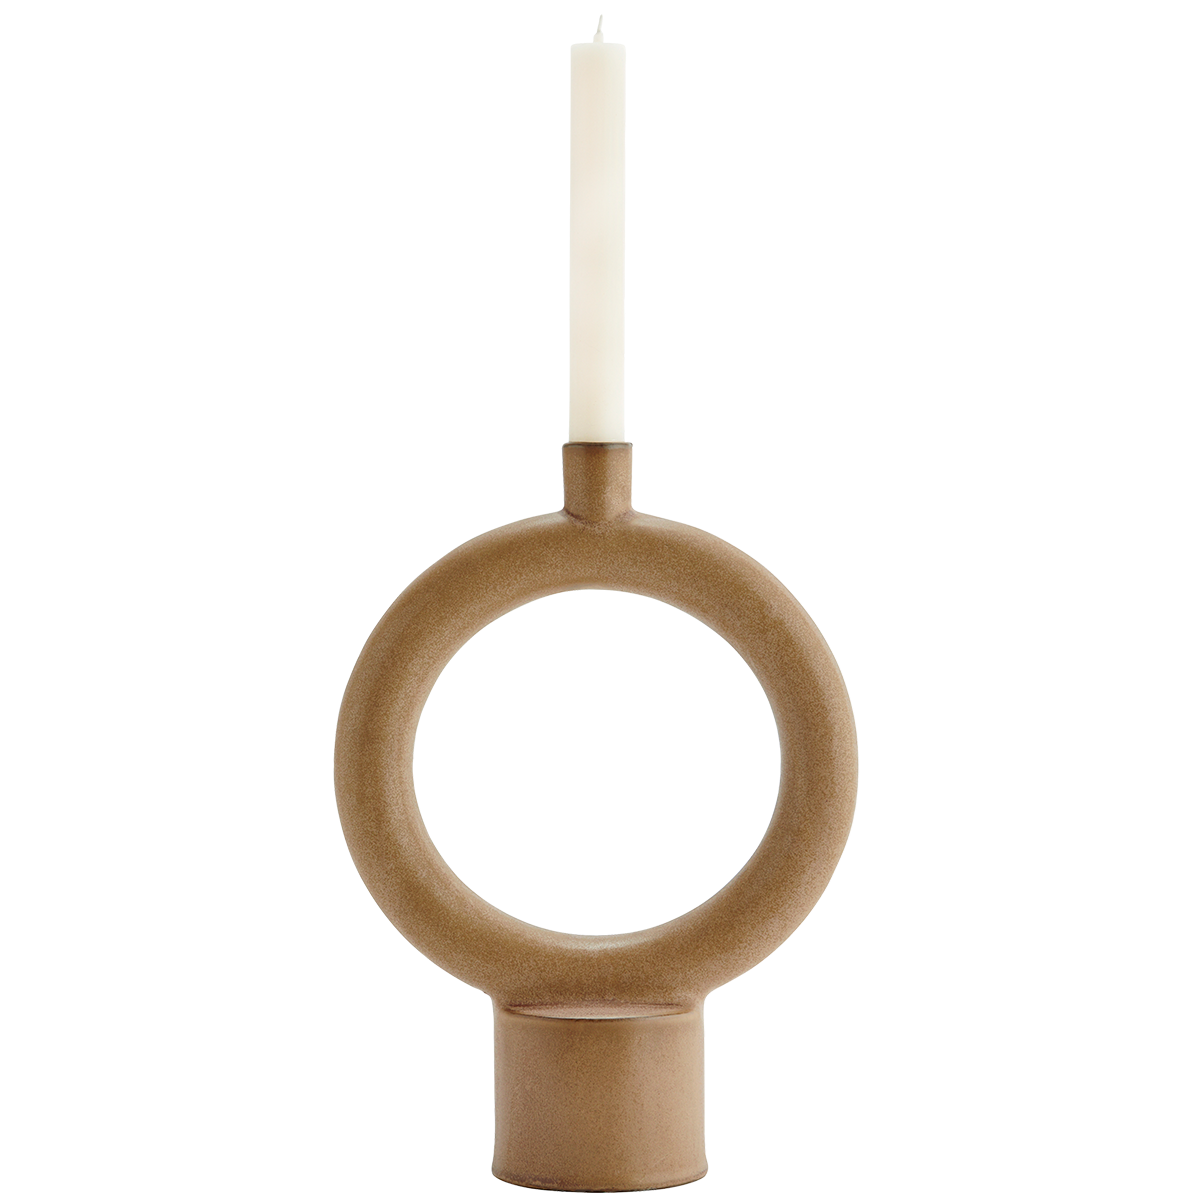 Stoneware candle holder